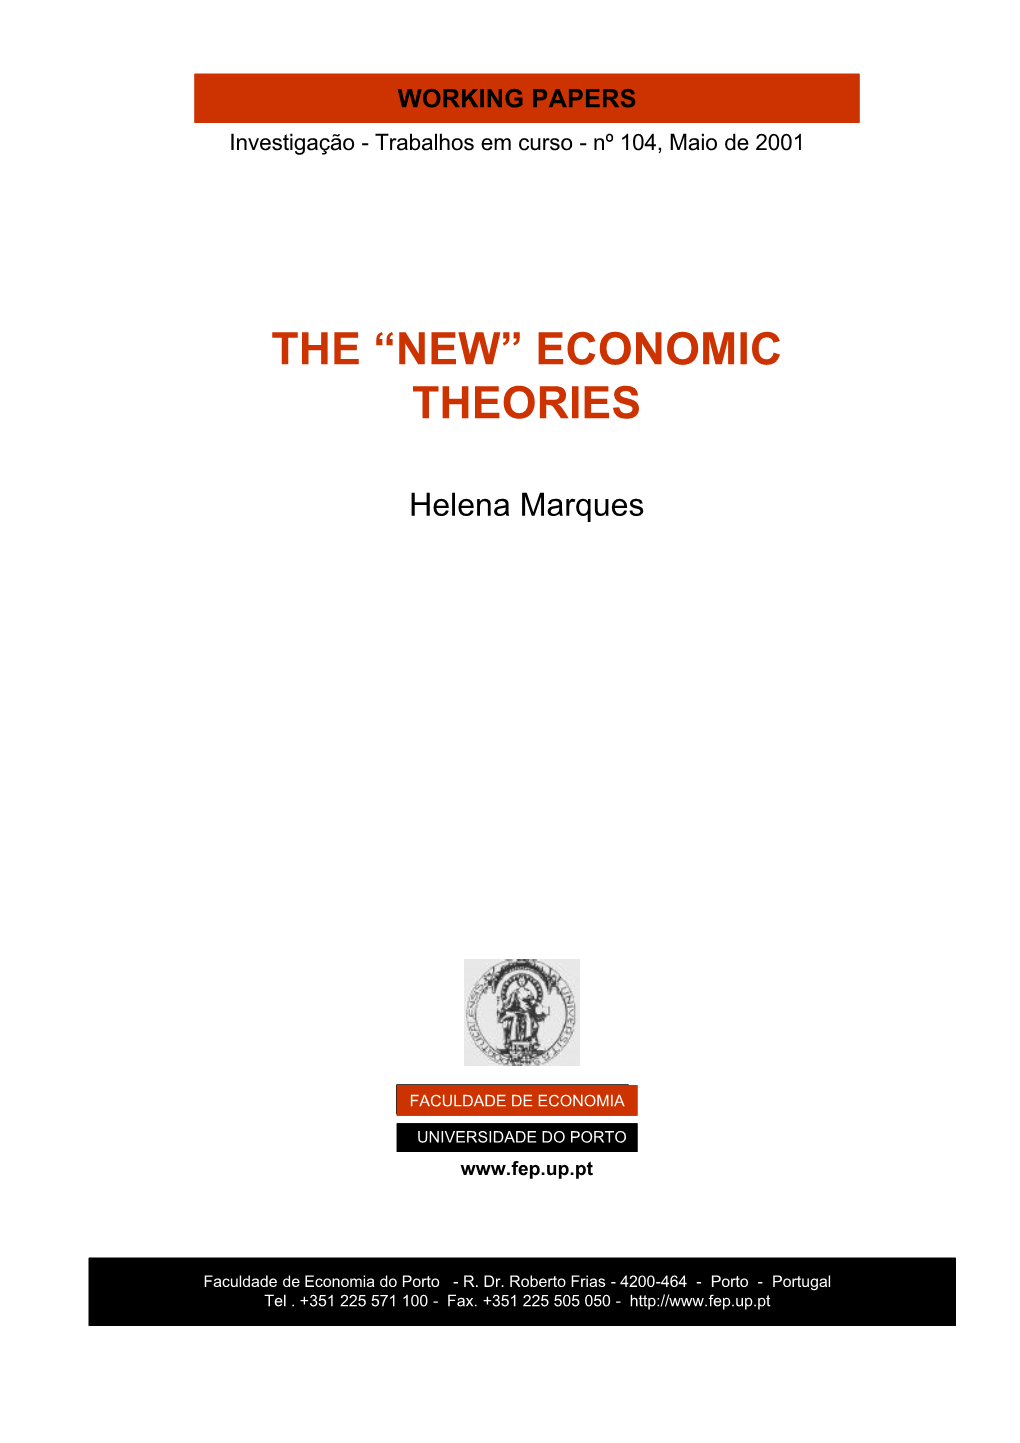 Economic Theories